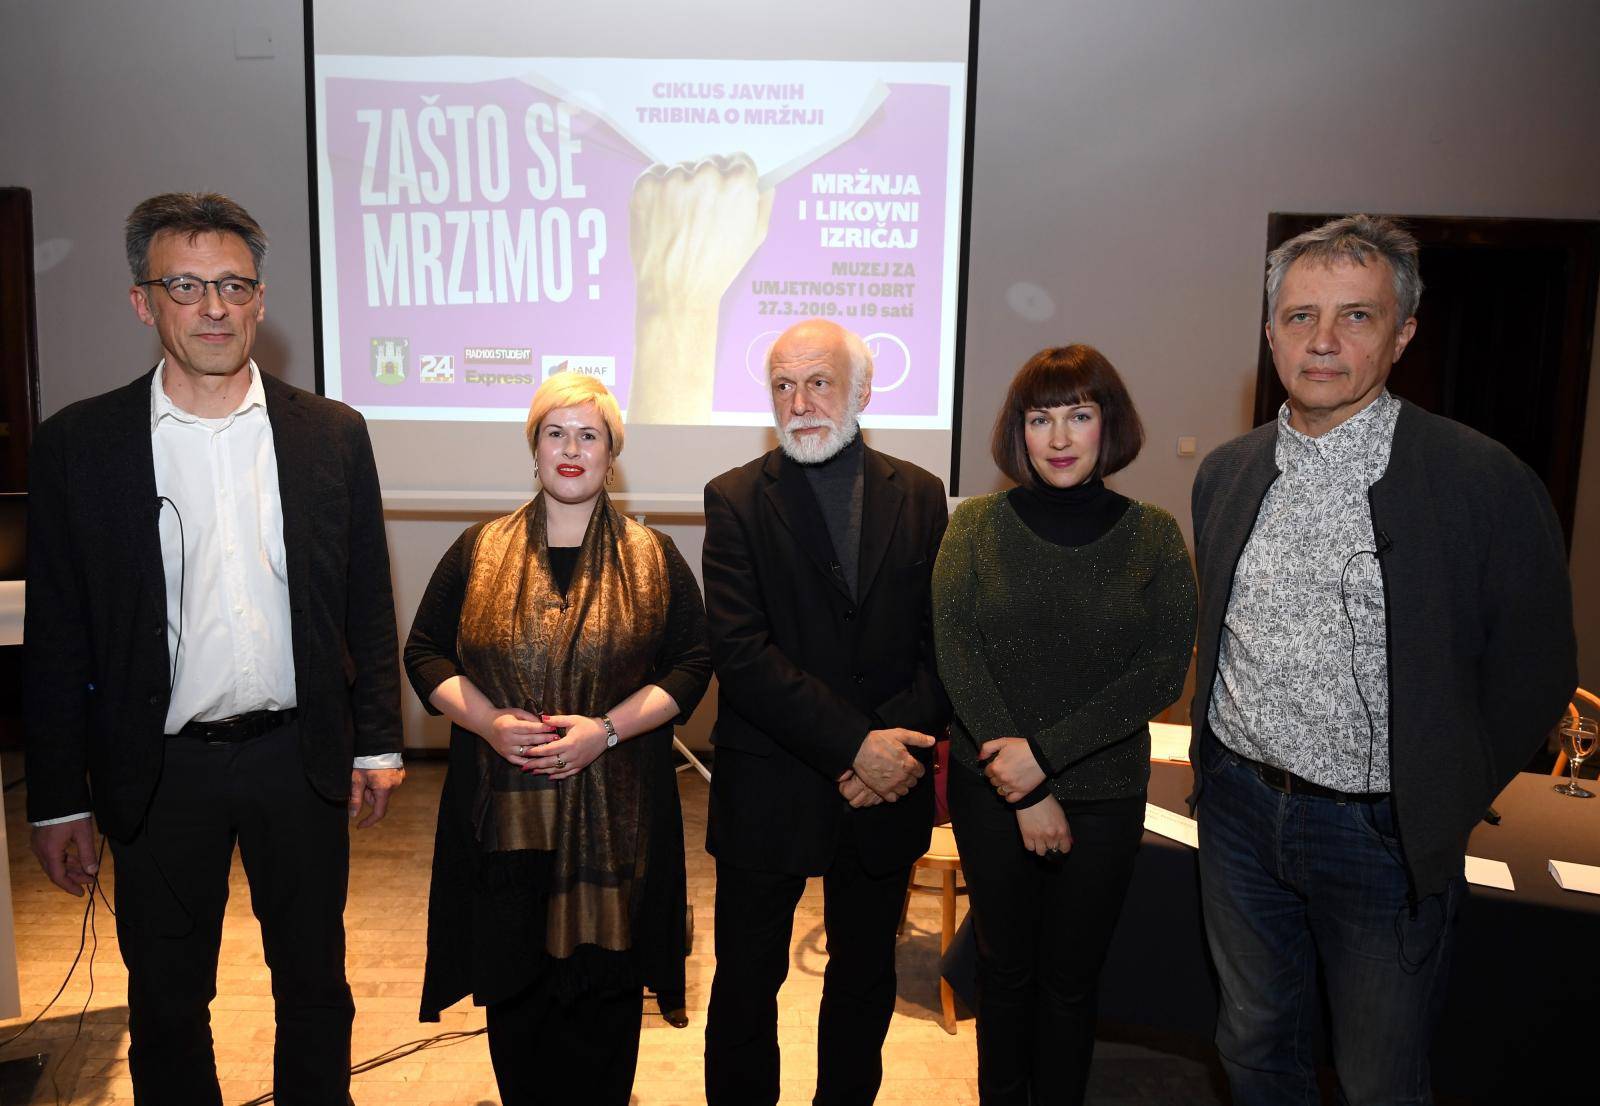 Zagreb: U MUO odrÅ¾ana tribina o mrÅ¾nji i likovnom izriÄaju u sklopu ciklusa "ZaÅ¡to se mrzimo?"